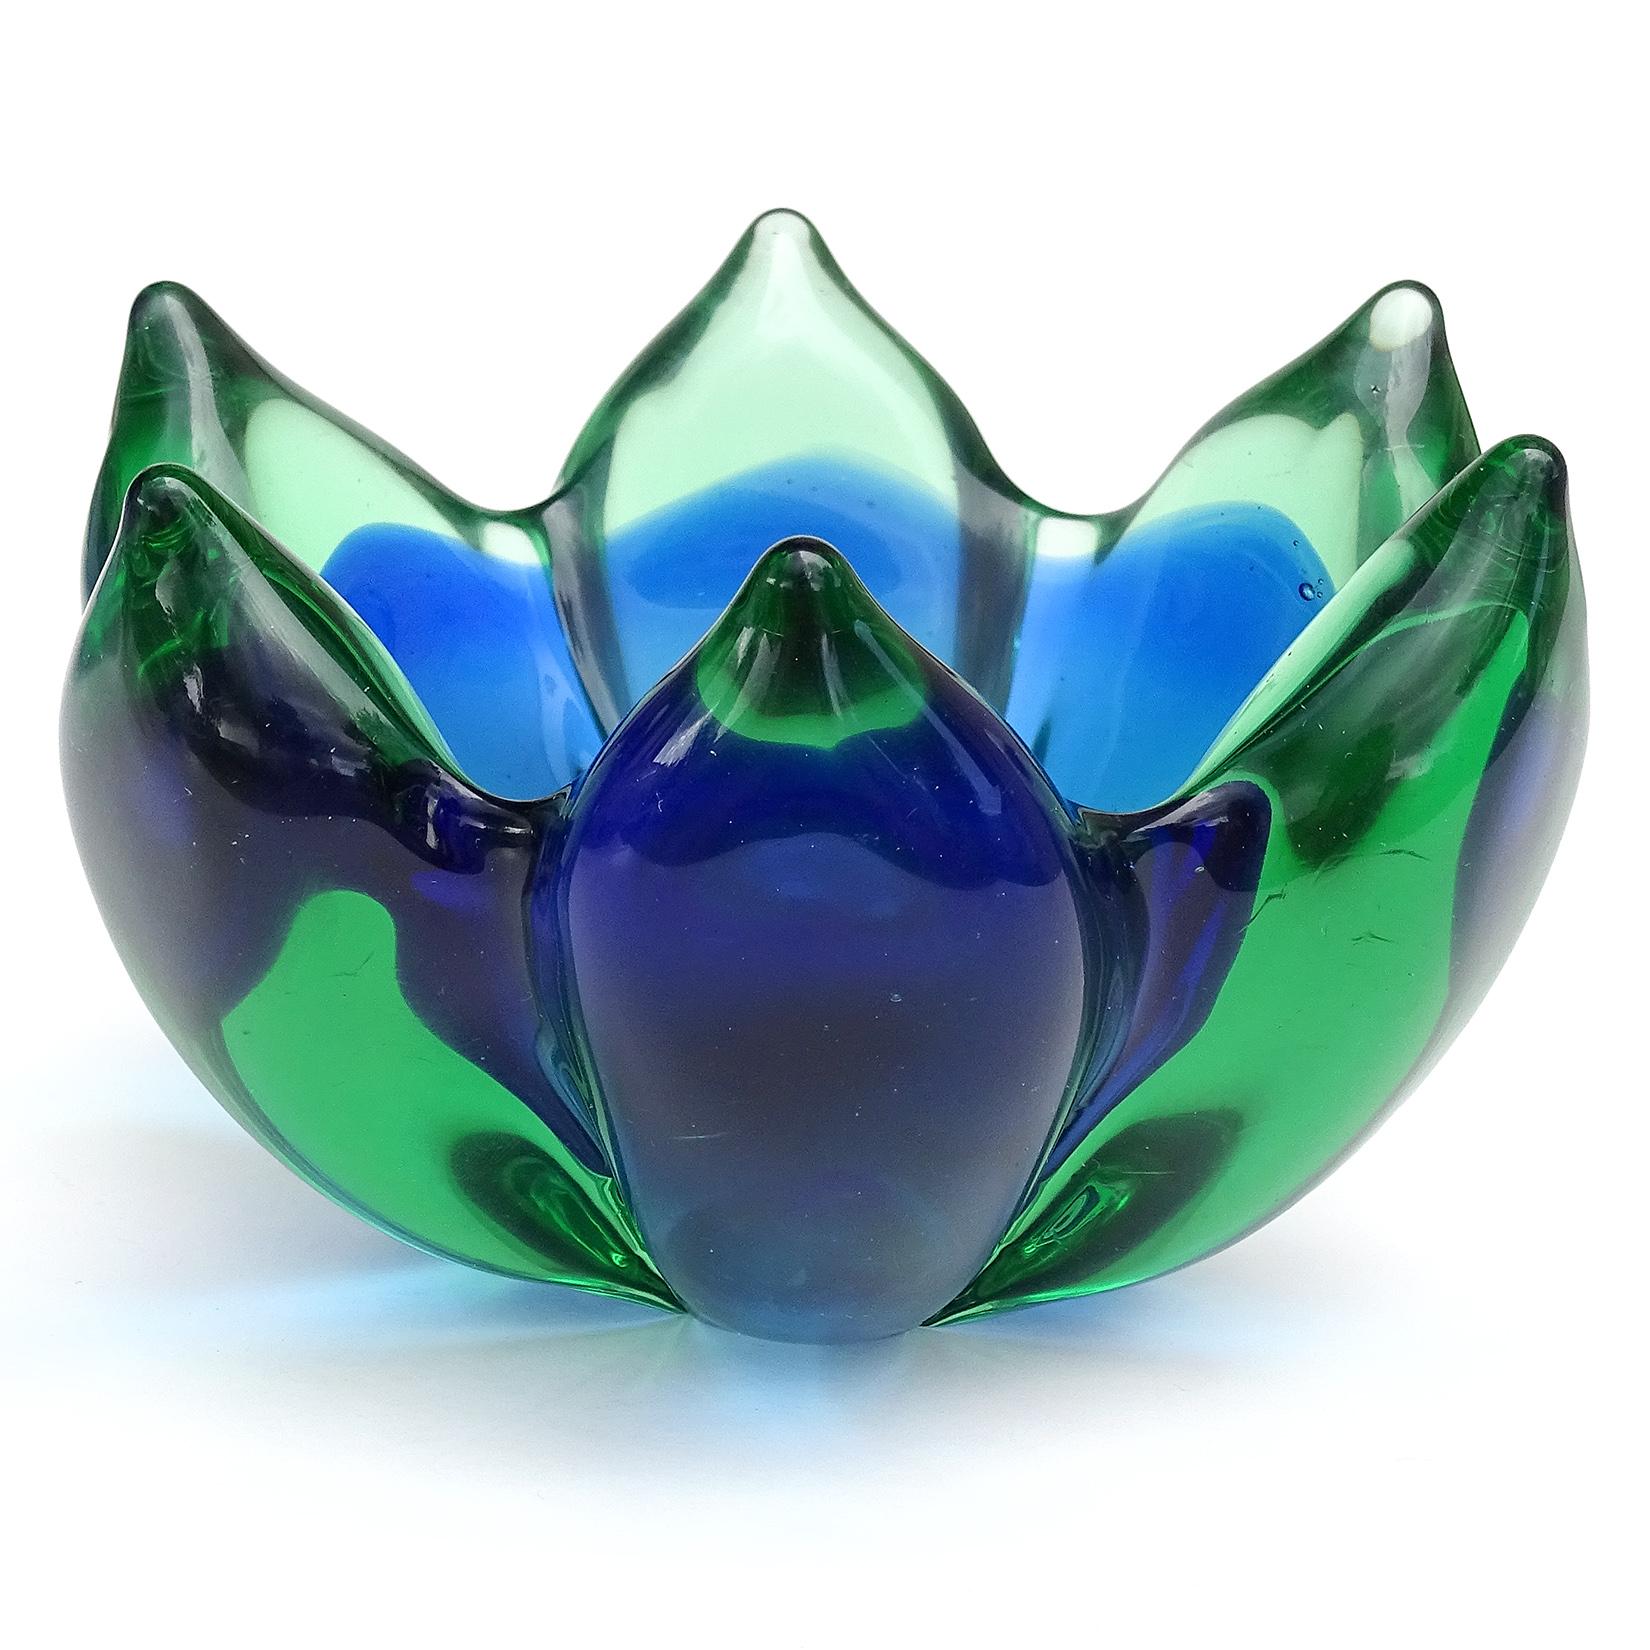 Magnifique bol en verre soufflé à la main de Murano Sommerso, vert et bleu, en verre d'art italien en forme de fleur de lotus, vide-poche. Documenté au designer Archimede Seguso. Celui-ci n'a pas d'étiquette, mais j'en ai possédé plusieurs autres